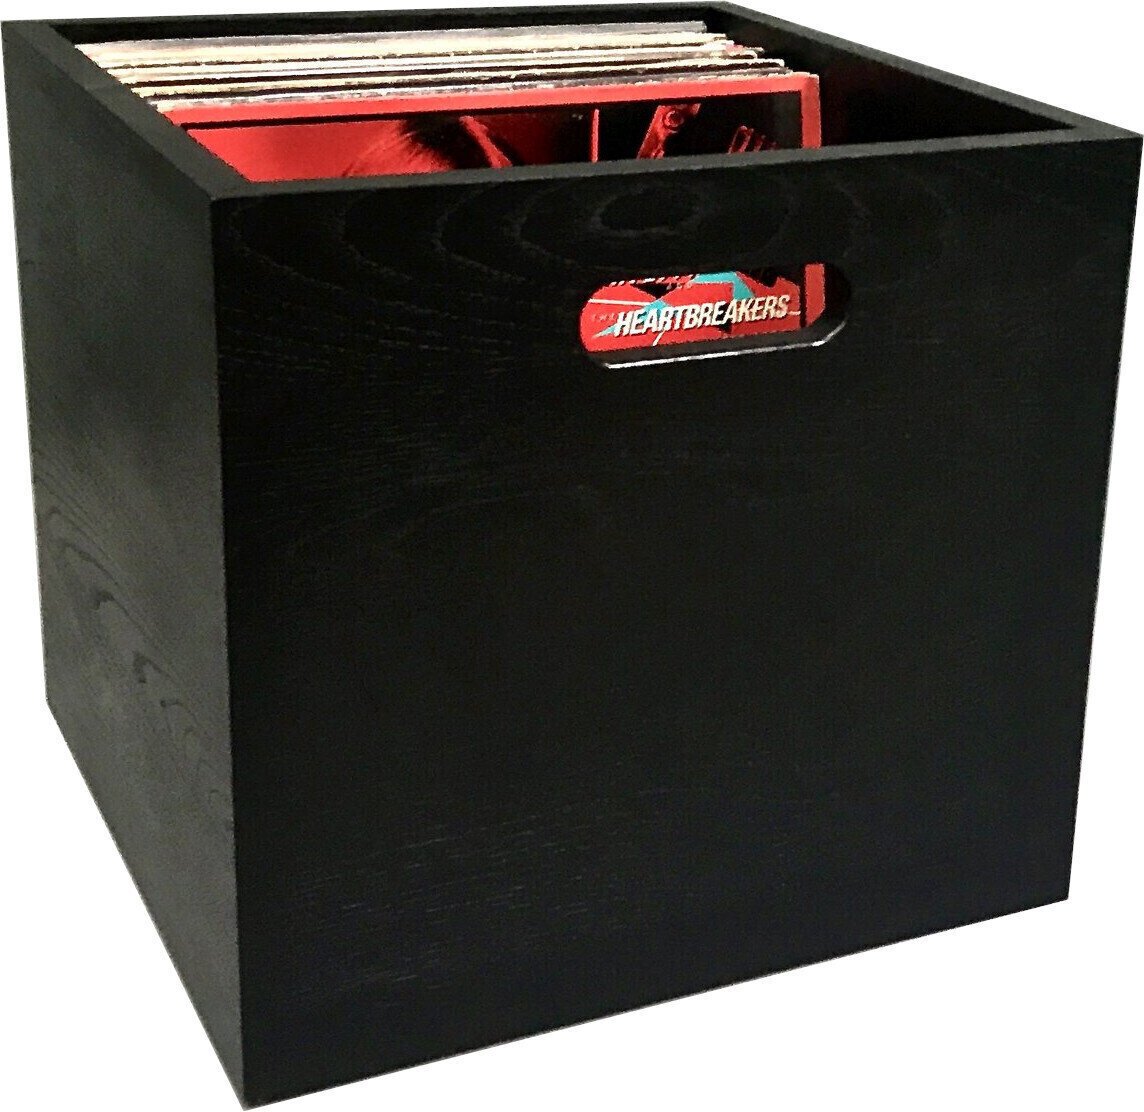 Caixa de discos de vinil Music Box Designs "Black Magic" India Ink Colored Oak 12 inch Vinyl Storage Box Caixa Caixa de discos de vinil